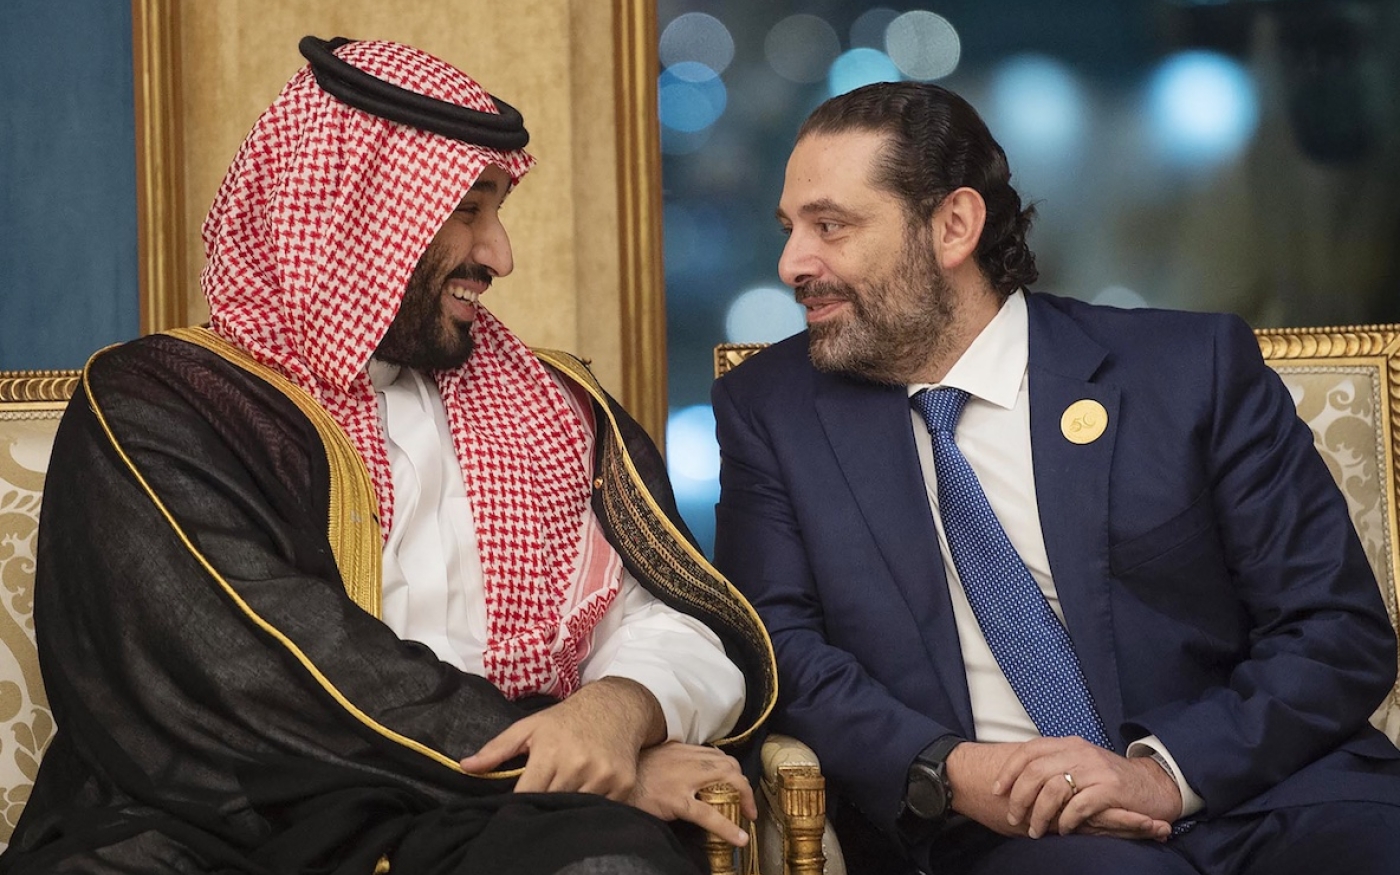 Mohammed ben Salmane et Saad Hariri lors d’une réunion au sommet de l’Organisation de la coopération islamique (OCI), dans la ville sainte saoudienne de La Mecque, 1er juin 2019 (AFP)